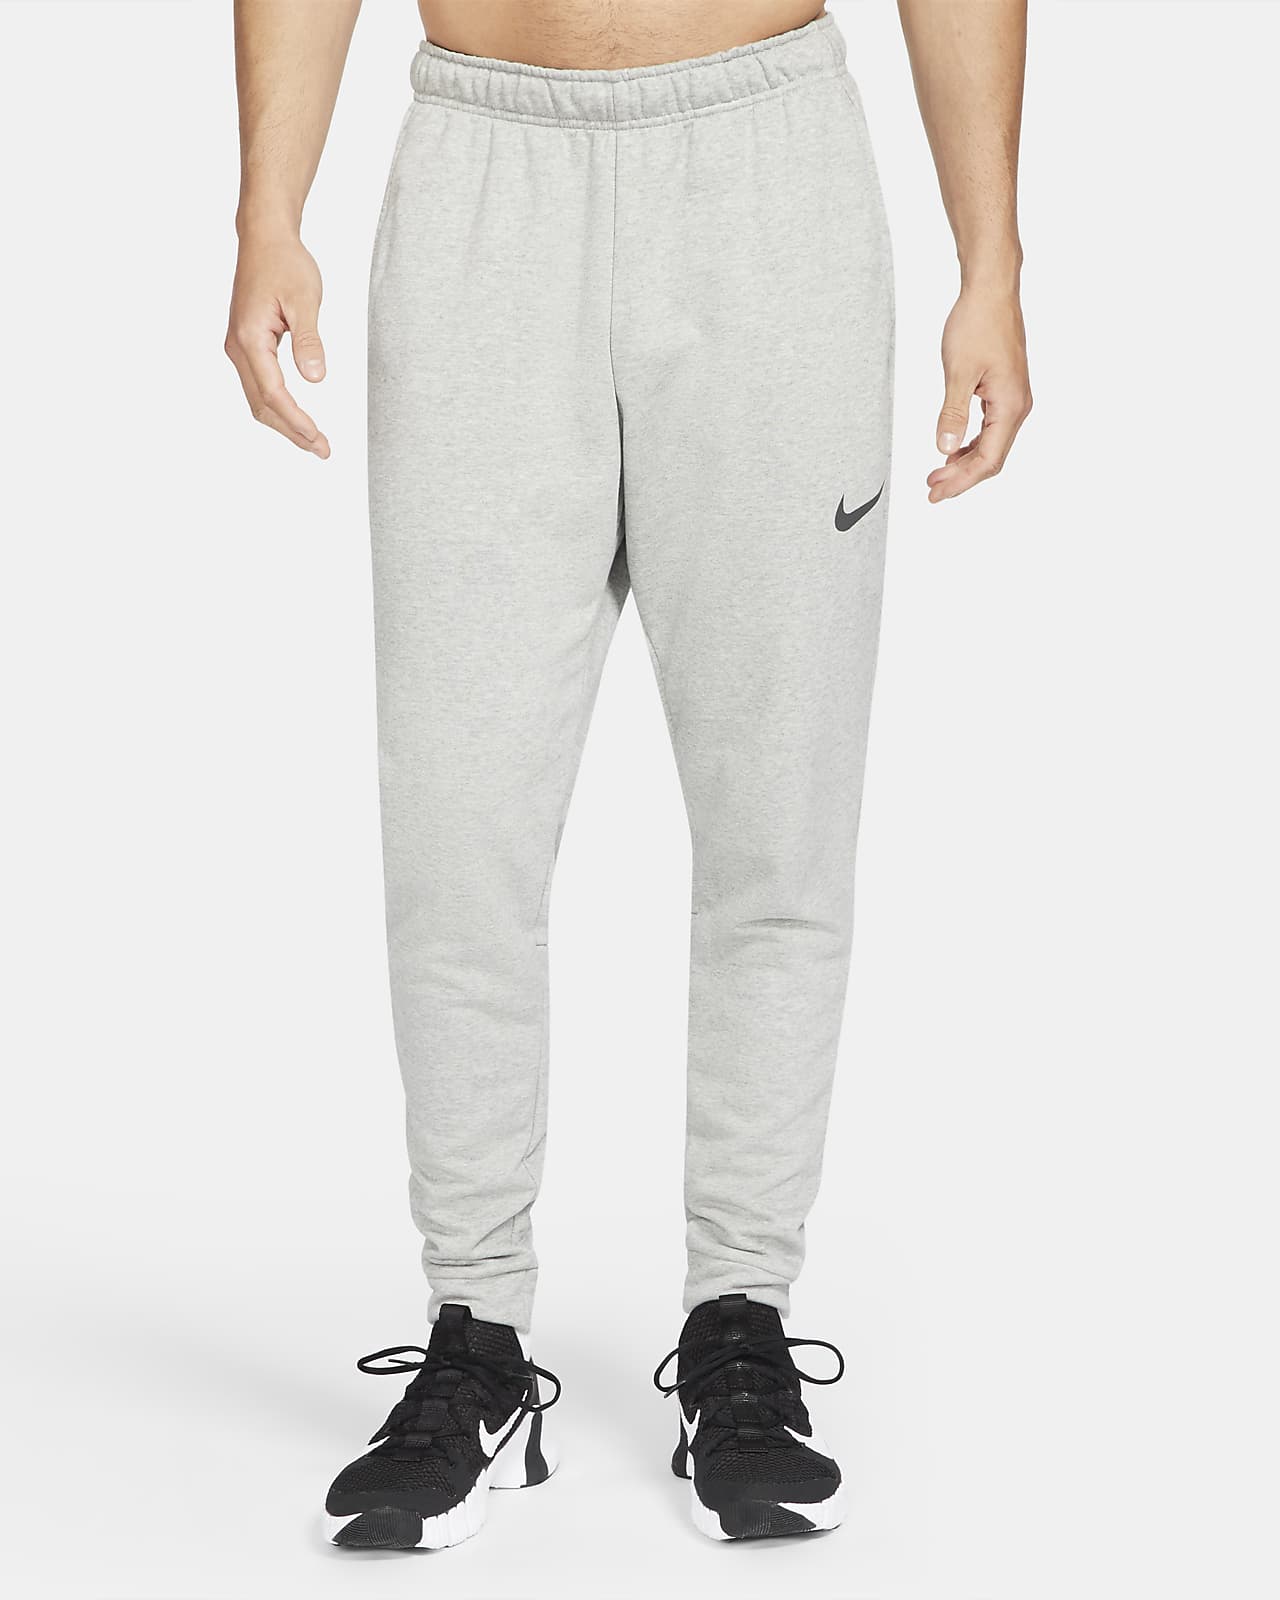 Pánské flísové fitness kalhoty Nike Dry Dri-FIT se zúženými nohavicemi